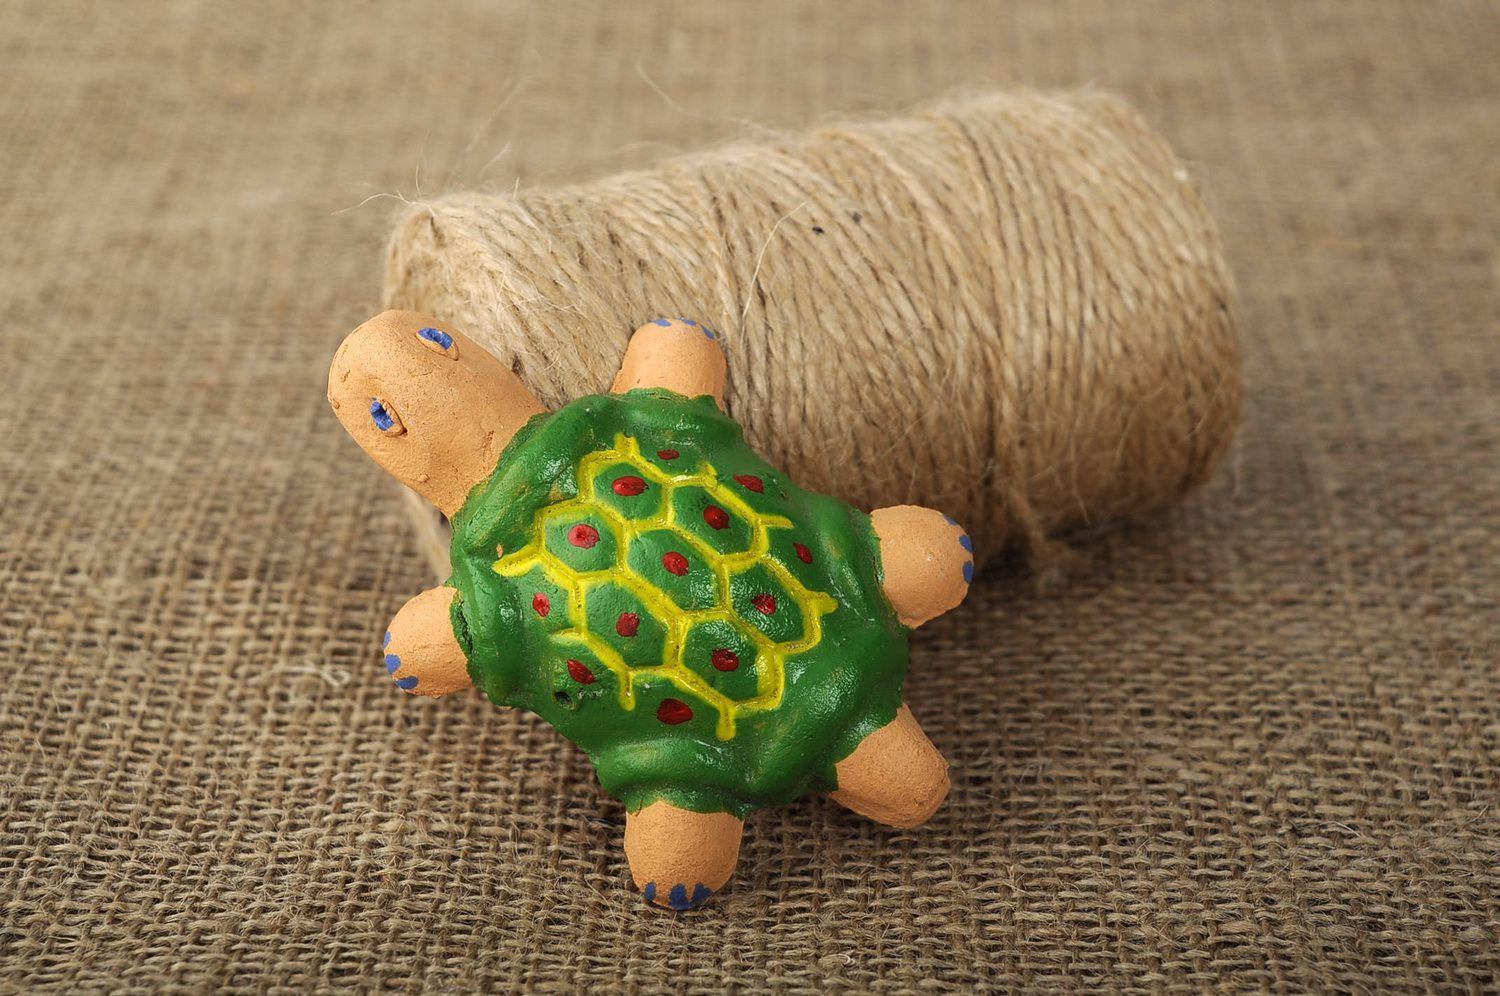 Apito artesanal em forma de uma tartaruga foto 5